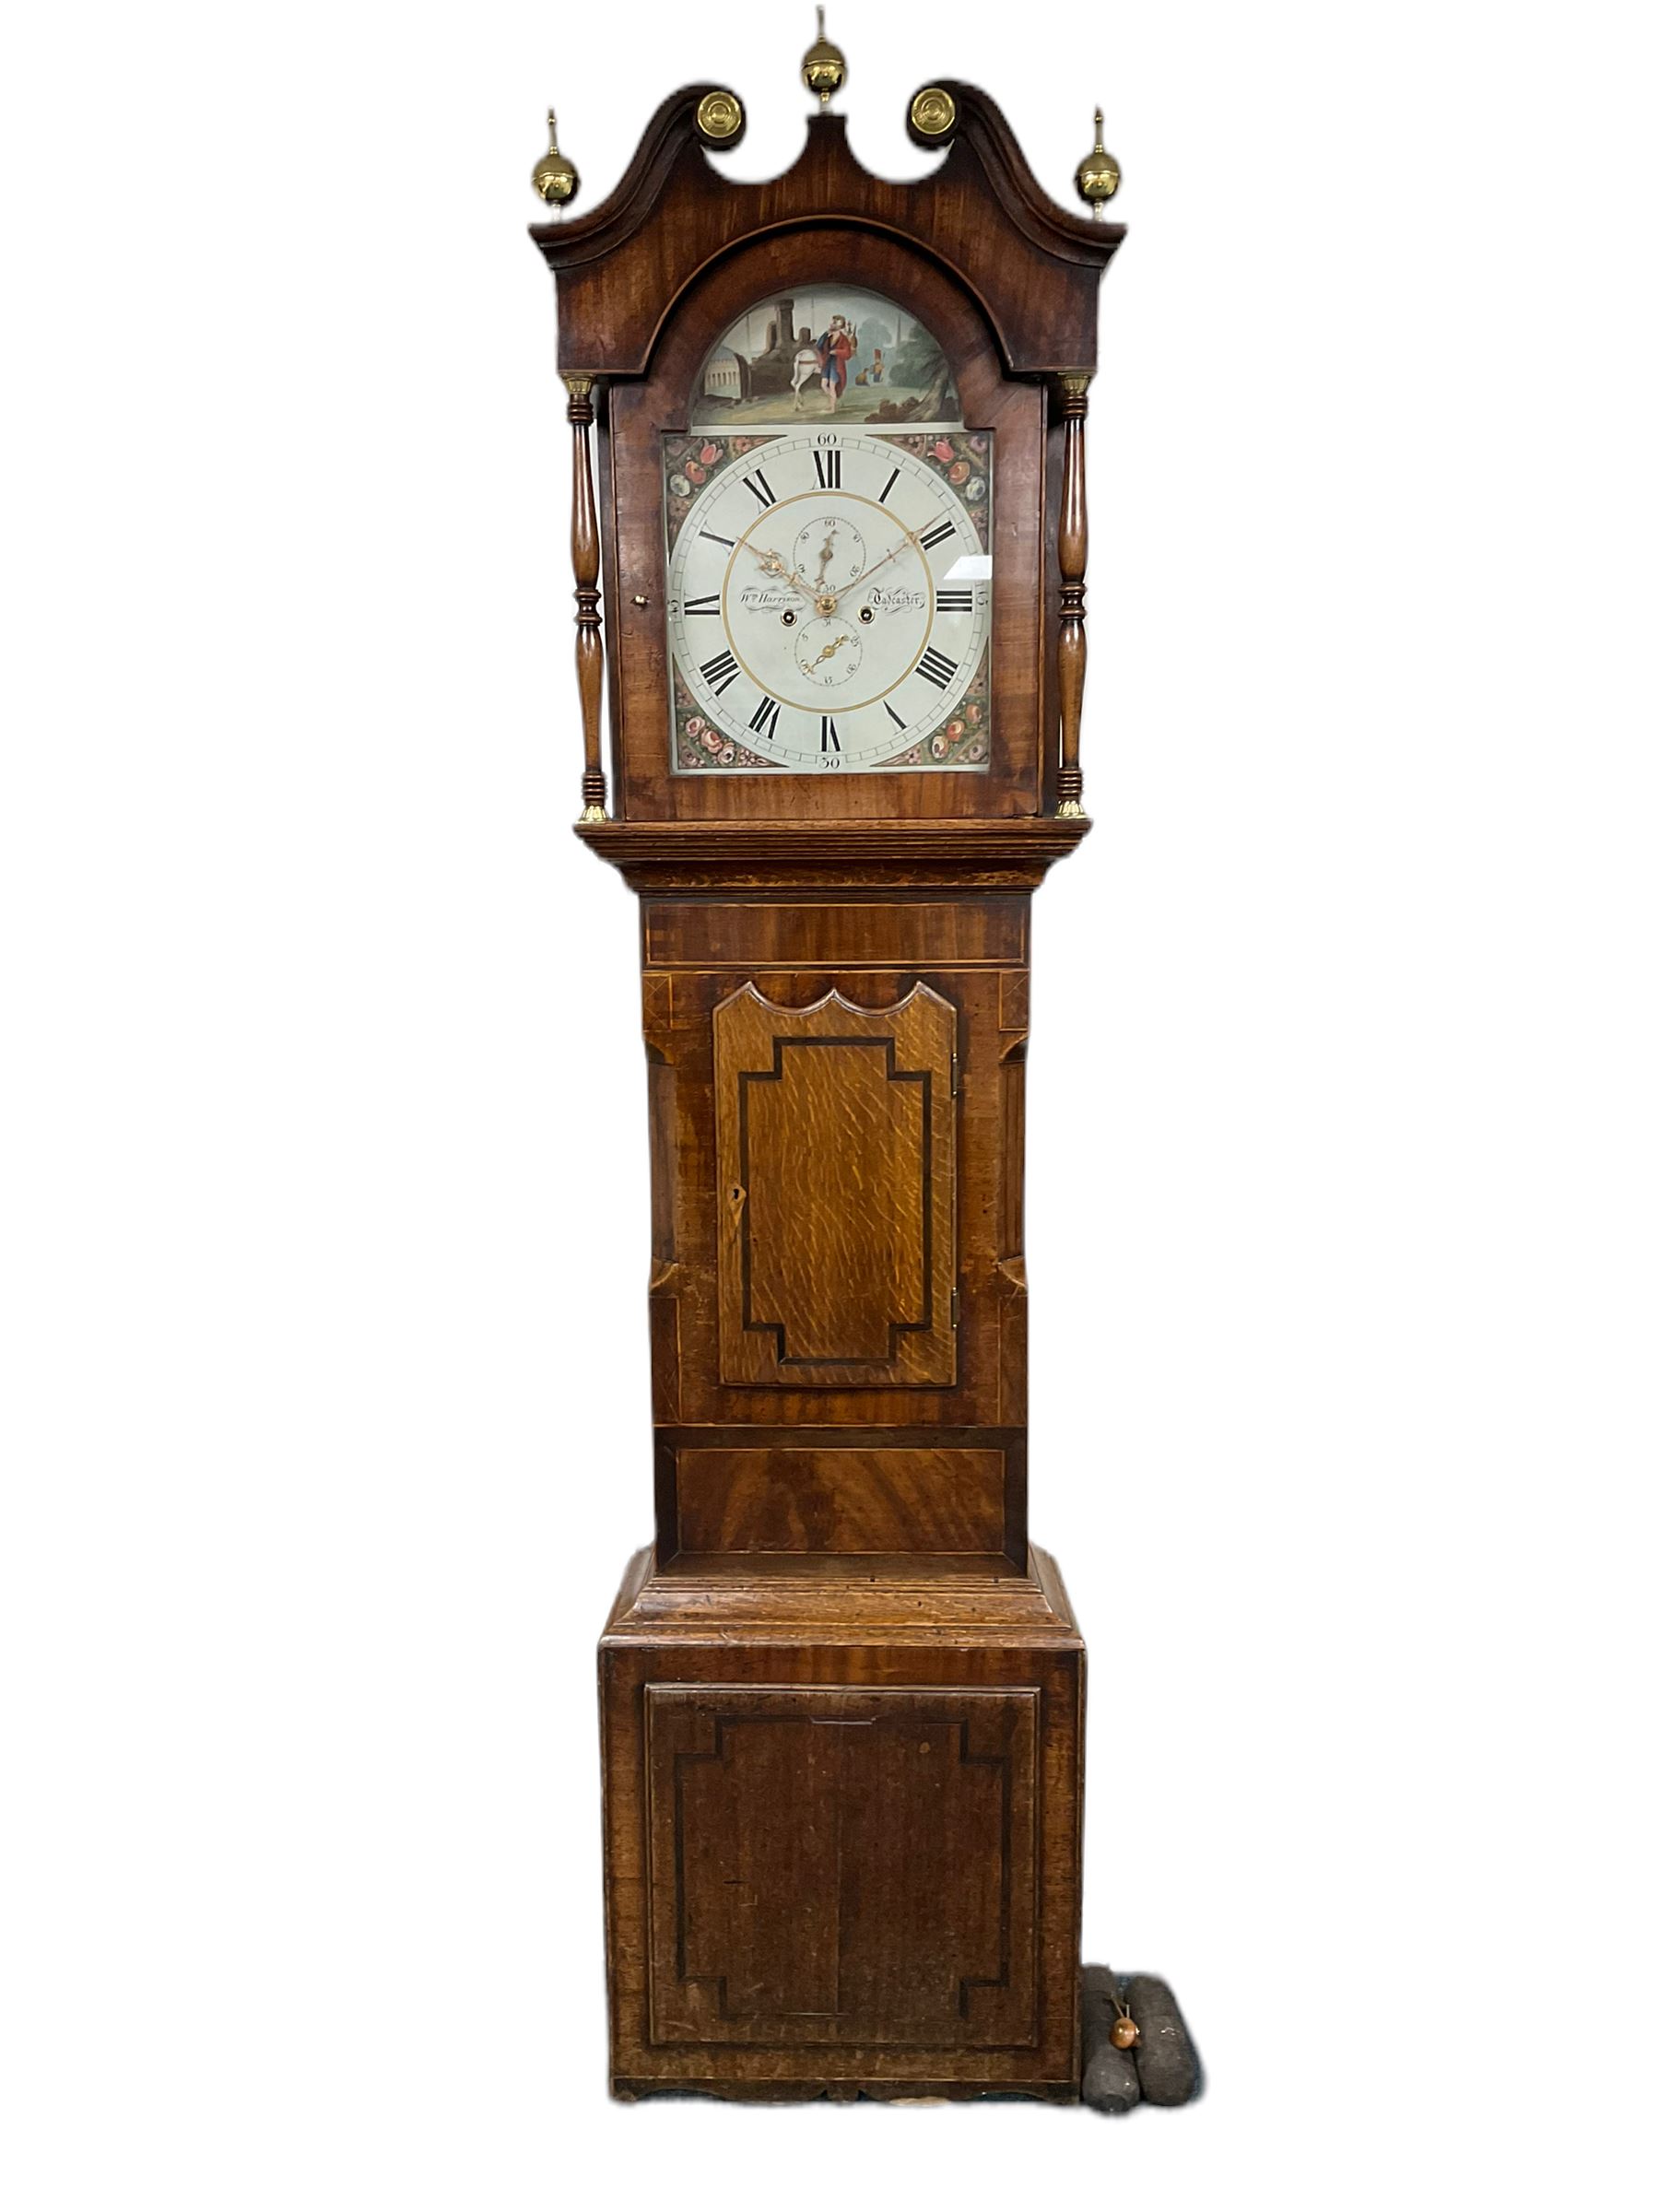 A mid-19th century oak and mahogany longcase clock by “ Wm Harrison, Tadcaster”, - Image 2 of 3